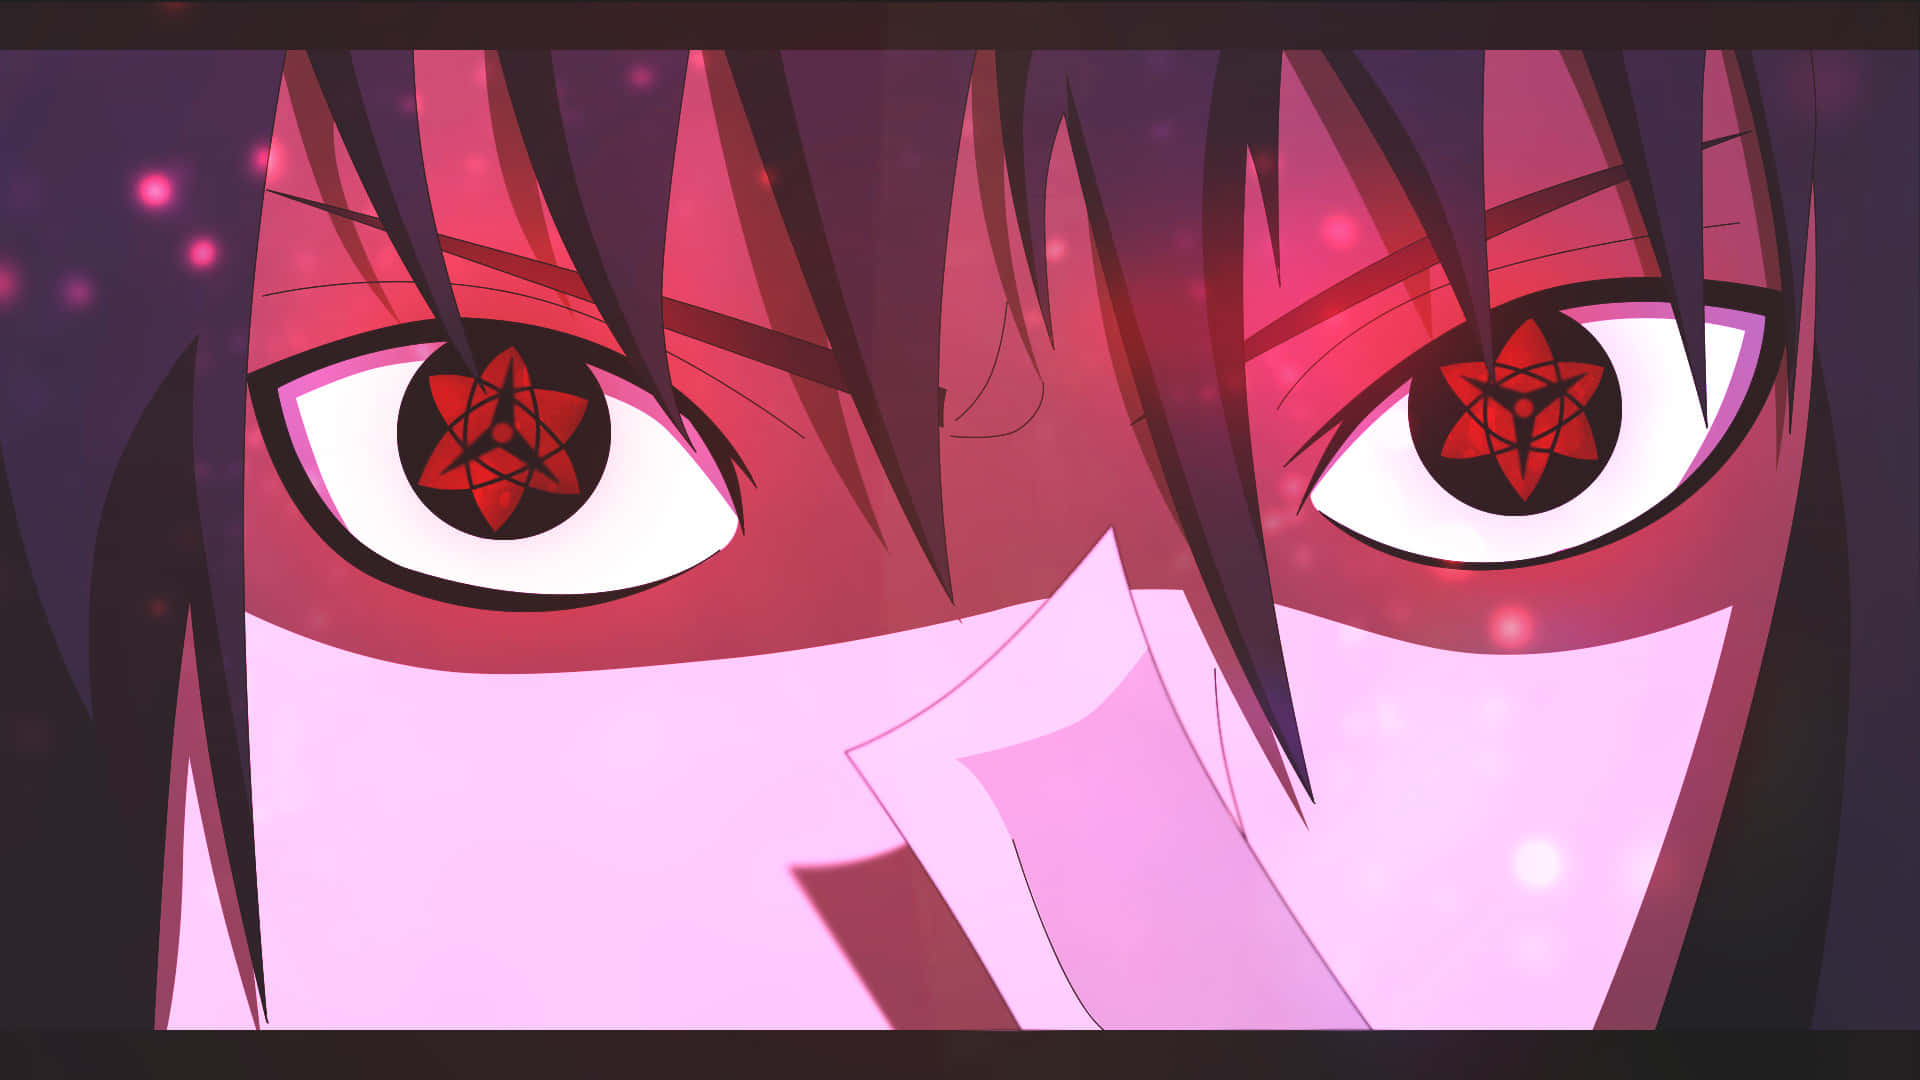 sasuke eternal mangekyou sharingan wallpaper